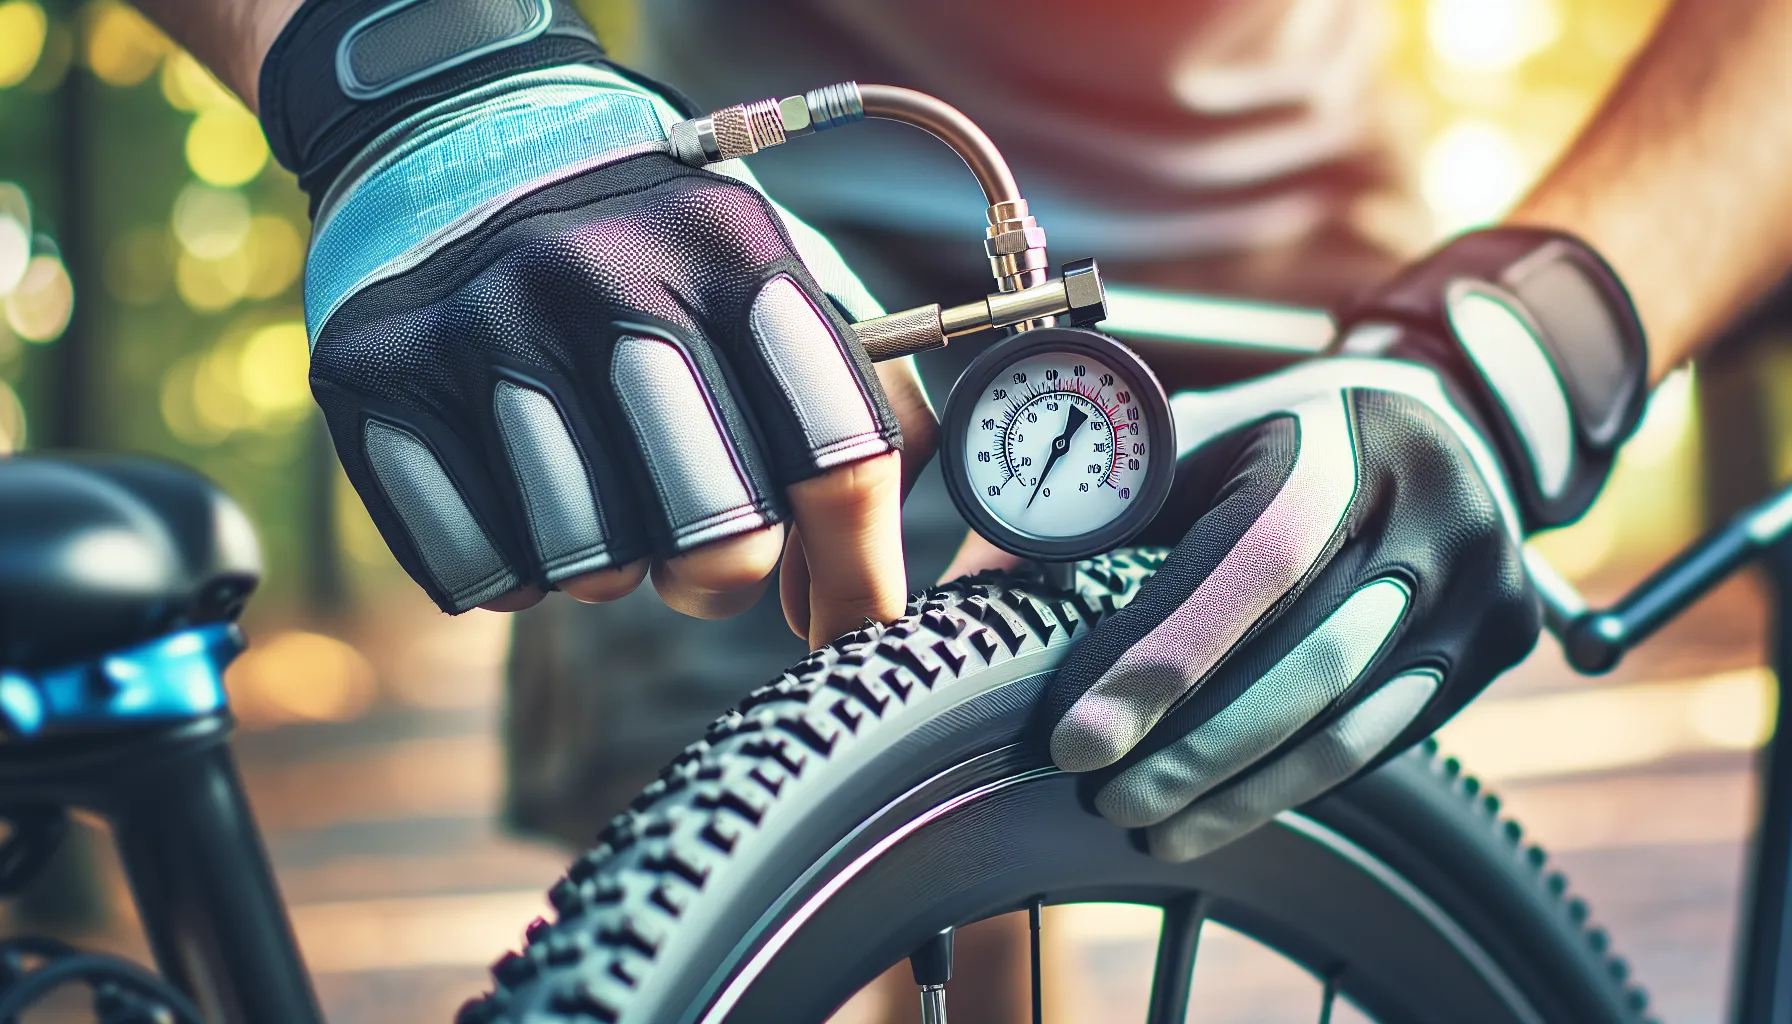 Escolher a pressão correta dos pneus da sua bicicleta é importante para garantir um passeio seguro e confortável. Aqui estão algumas dicas para ajudá-lo a escolher a pressão adequada:

1. Verifique a recomendação do fabricante: A maioria dos pneus de bicicleta tem uma faixa de pressão recomendada impressa na lateral. Verifique essa informação para ter uma ideia da pressão ideal.

2